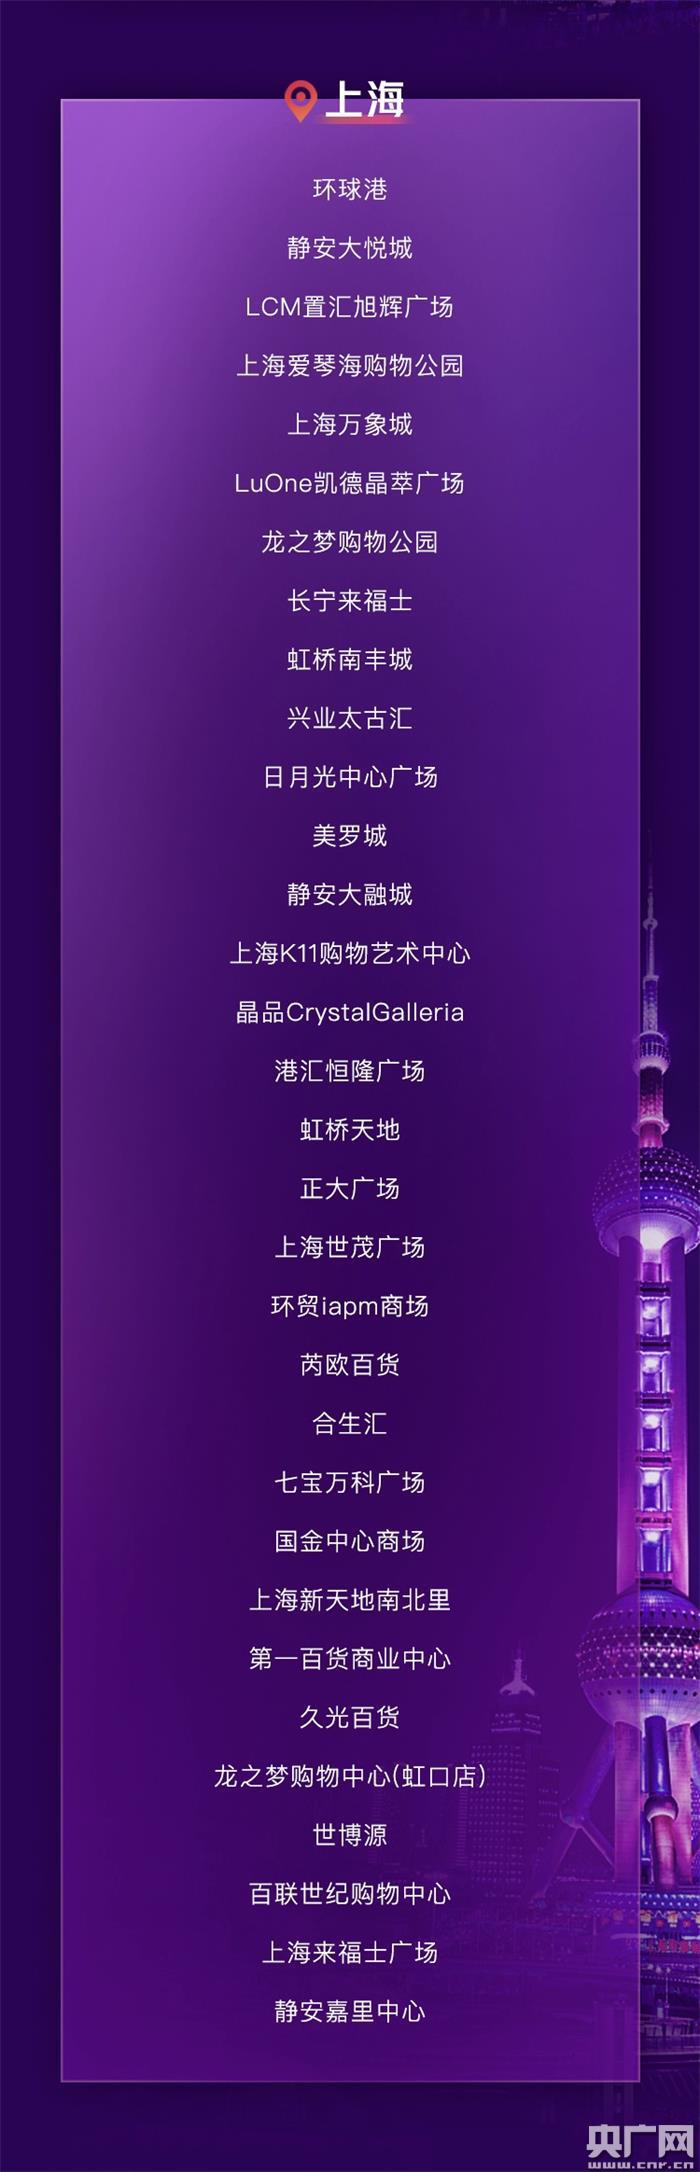 大众点评团上海_汉庭海友酒店(上海浦三路 大众点评网_大众点评 上海